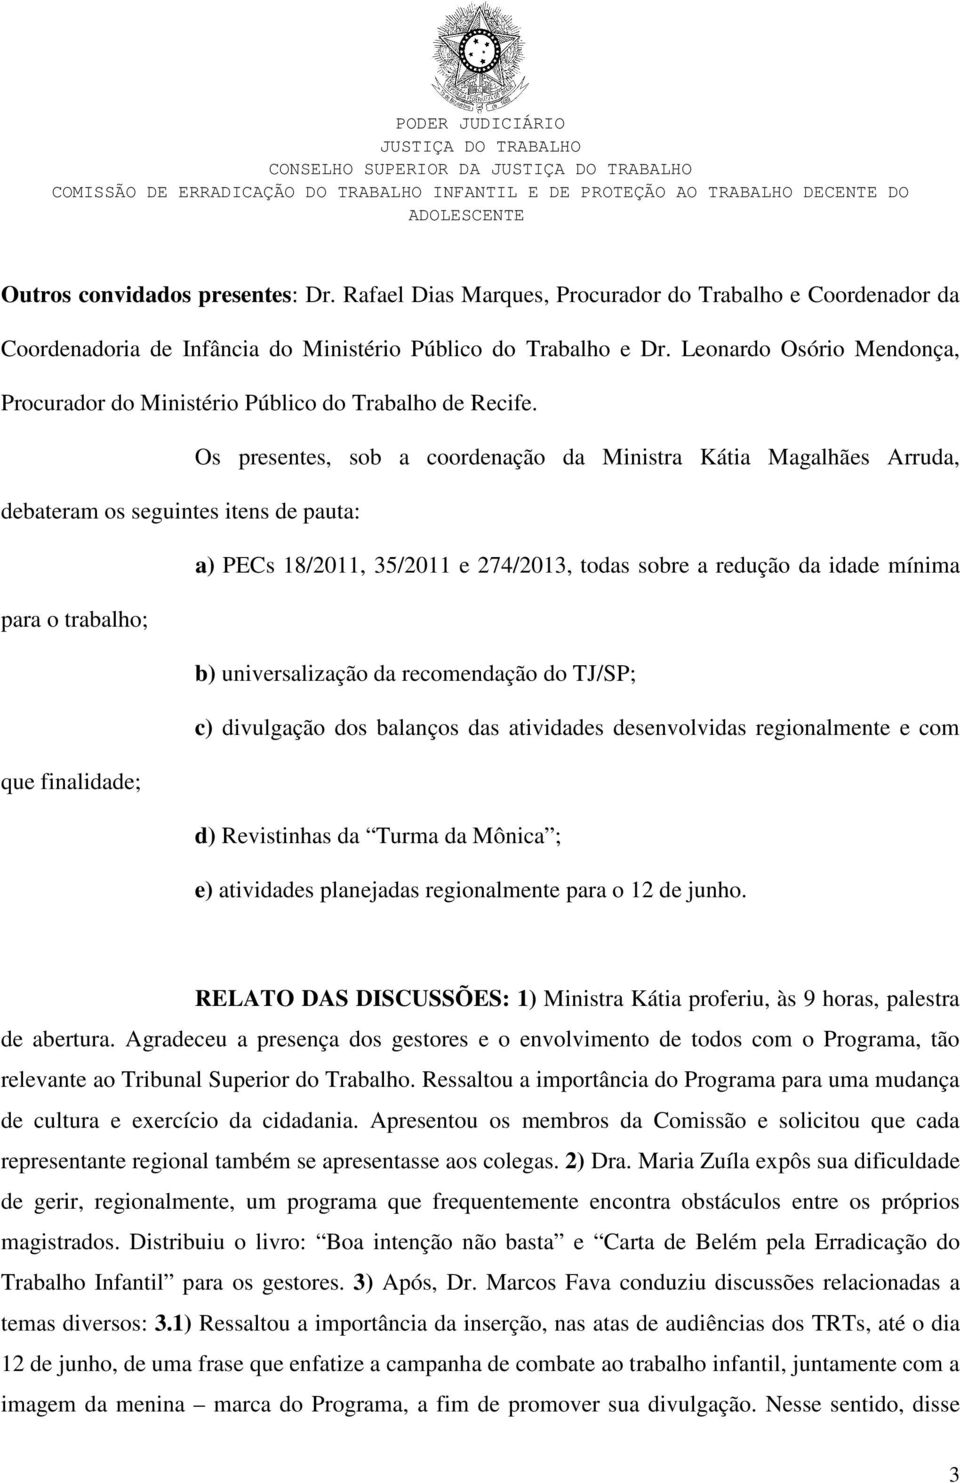 Os presentes, sob a coordenação da Ministra Kátia Magalhães Arruda, debateram os seguintes itens de pauta: a) PECs 18/2011, 35/2011 e 274/2013, todas sobre a redução da idade mínima para o trabalho;